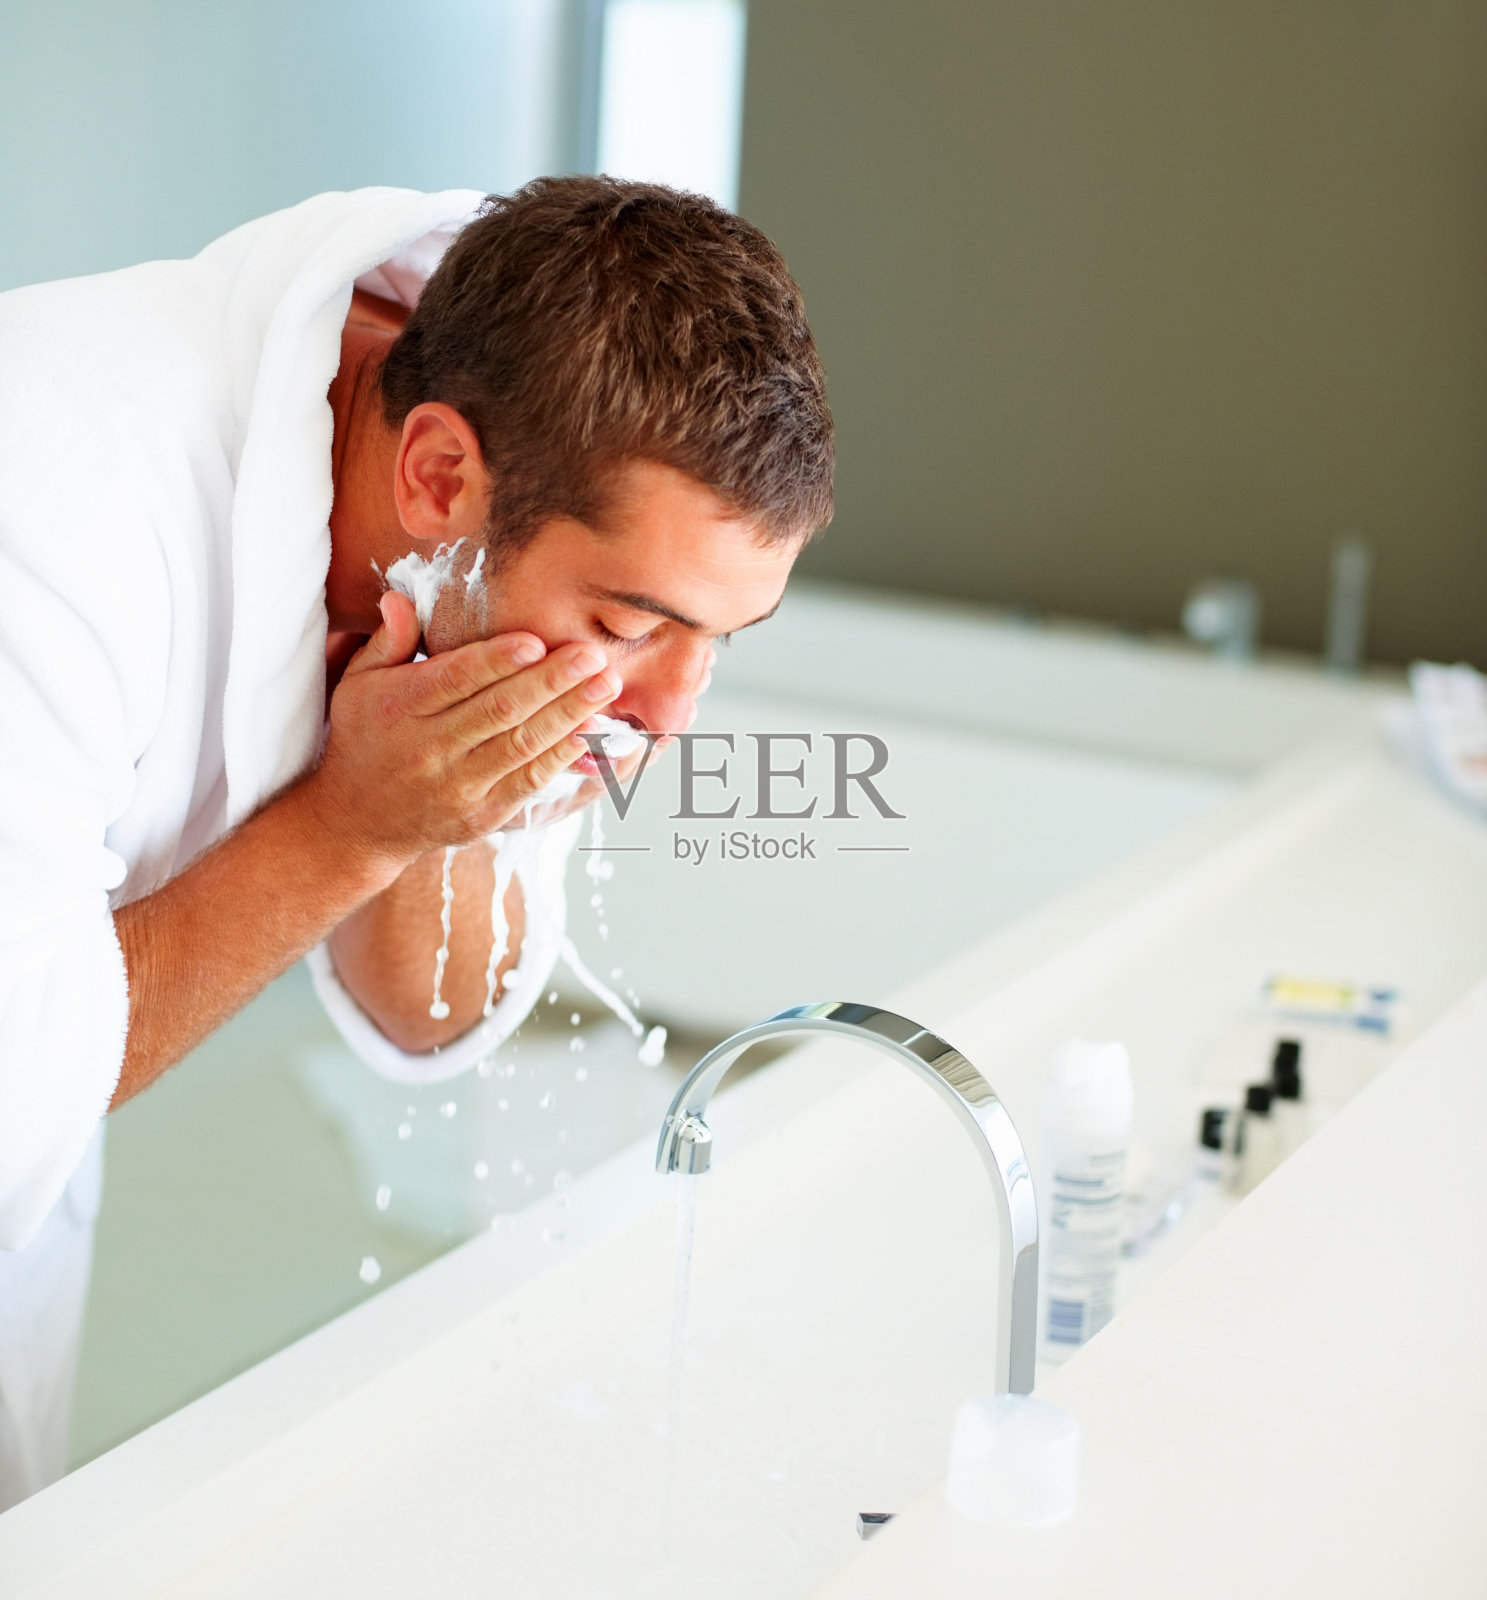 男子剃须后洗脸照片摄影图片